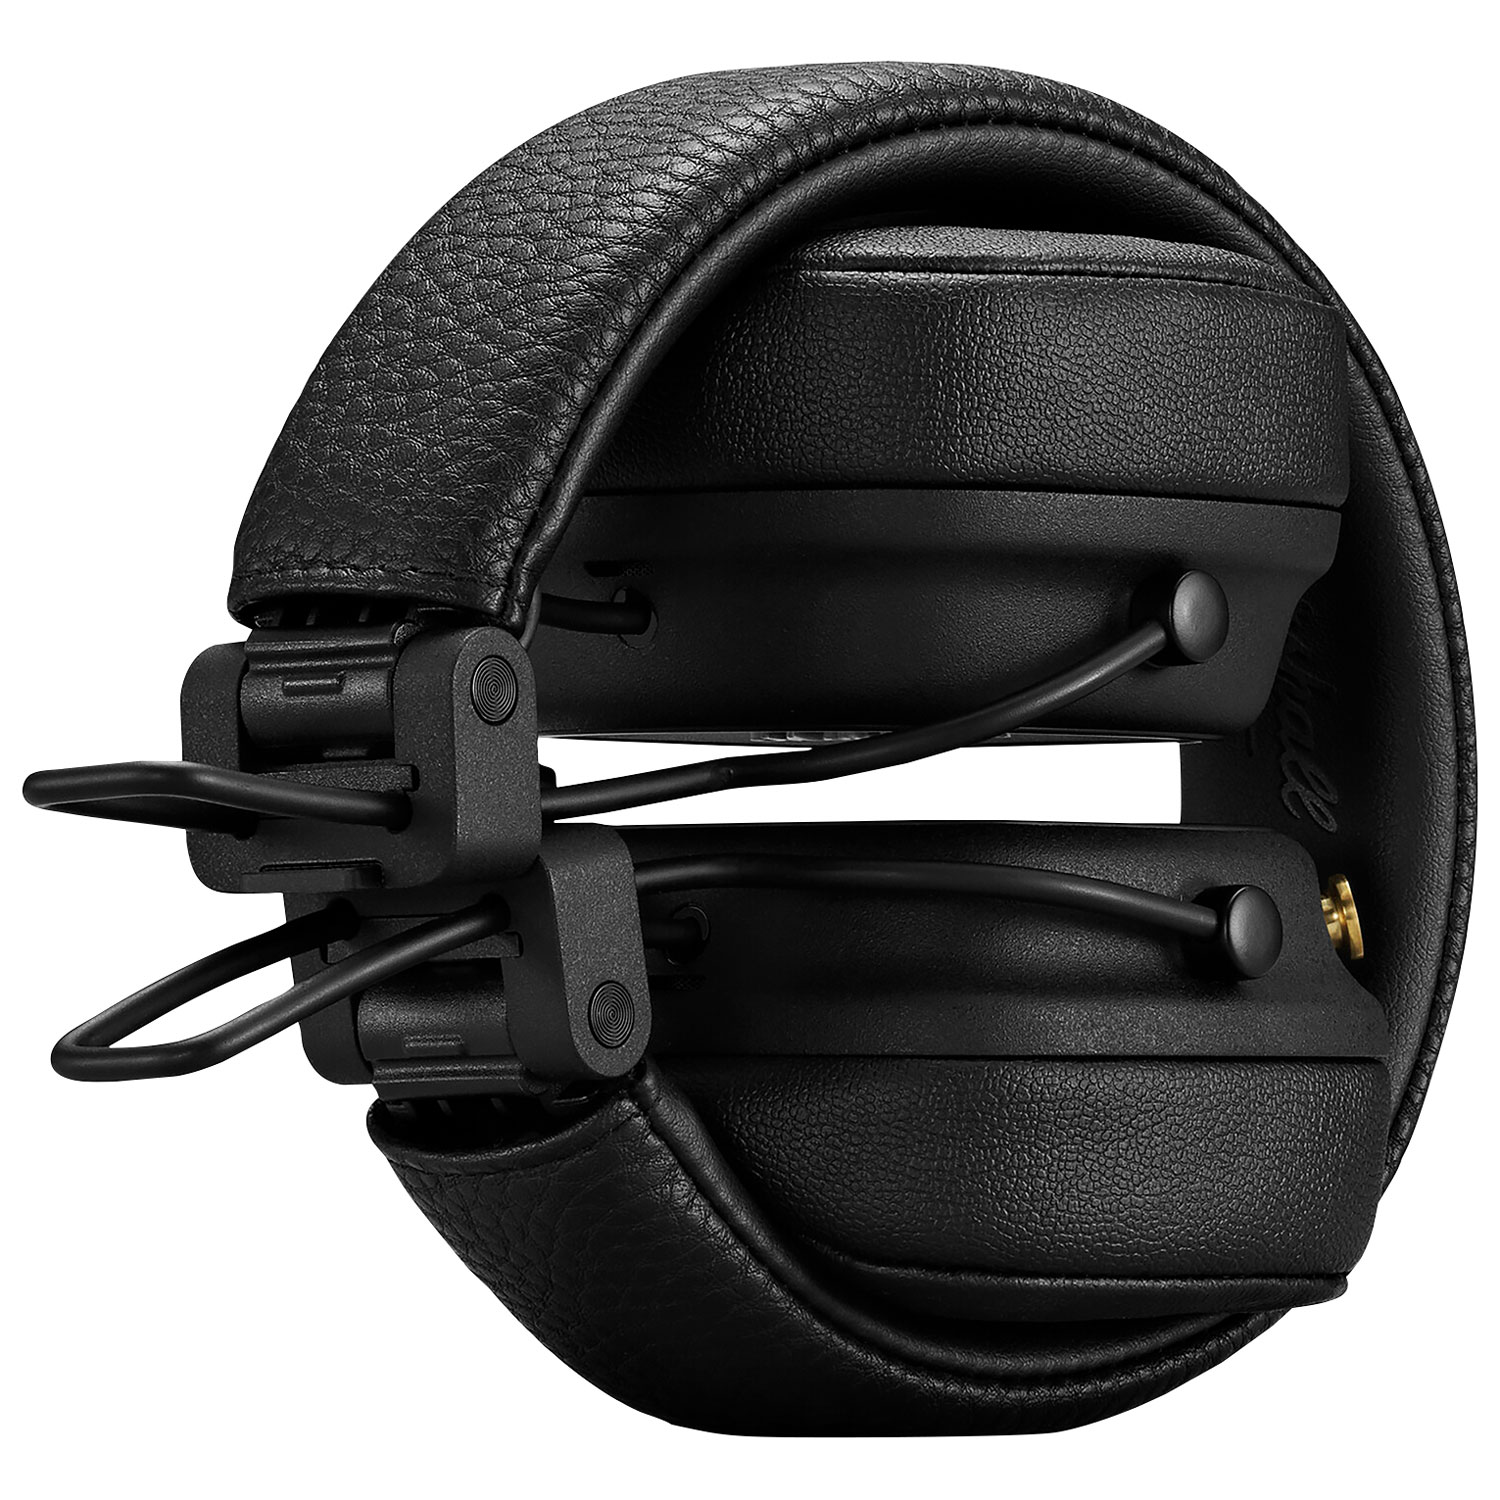 Marshall Major IV On-Ear Bluetooth Headphones - Black